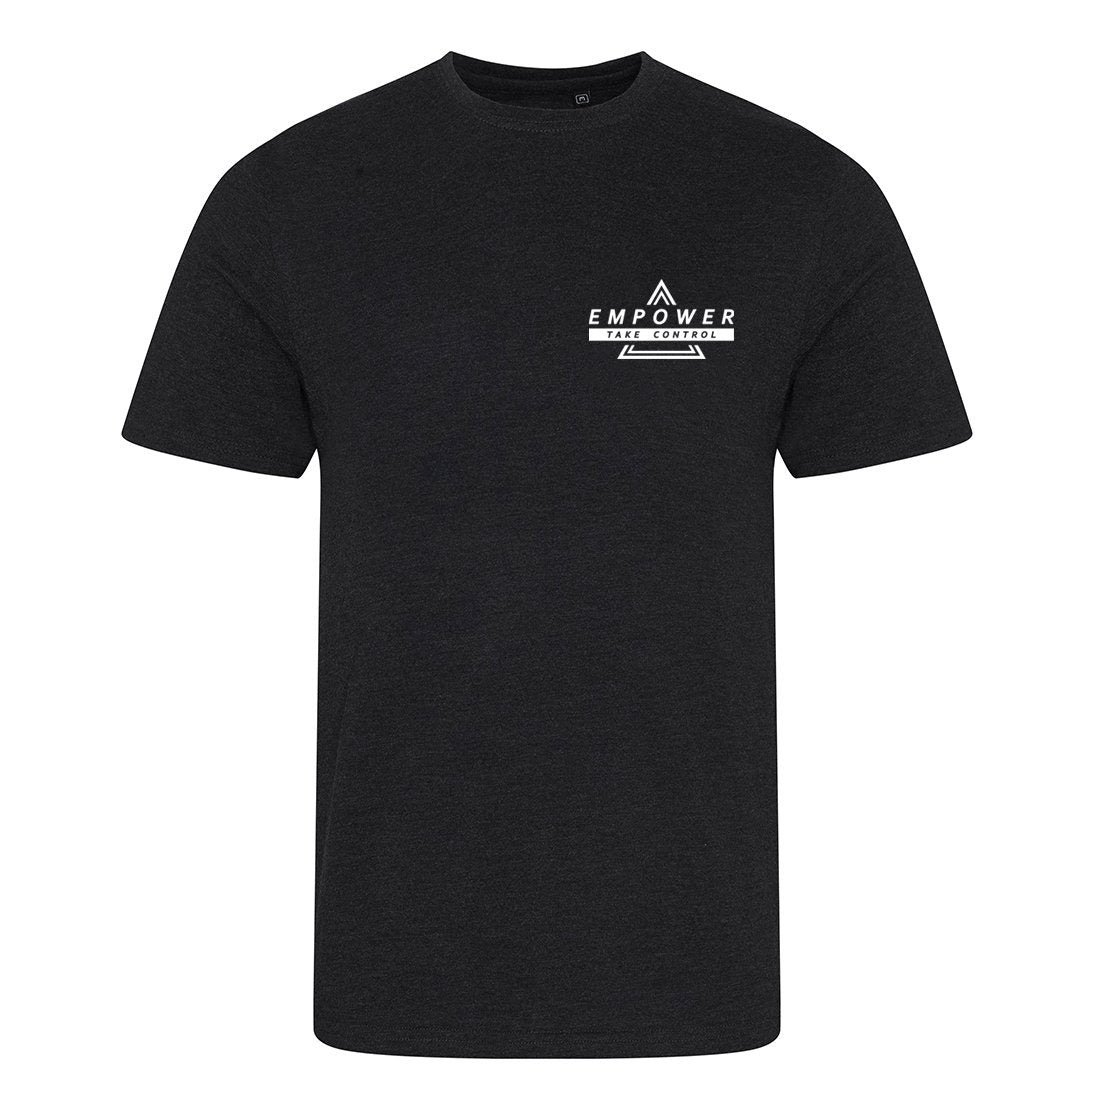 Empower T Shirt - Black